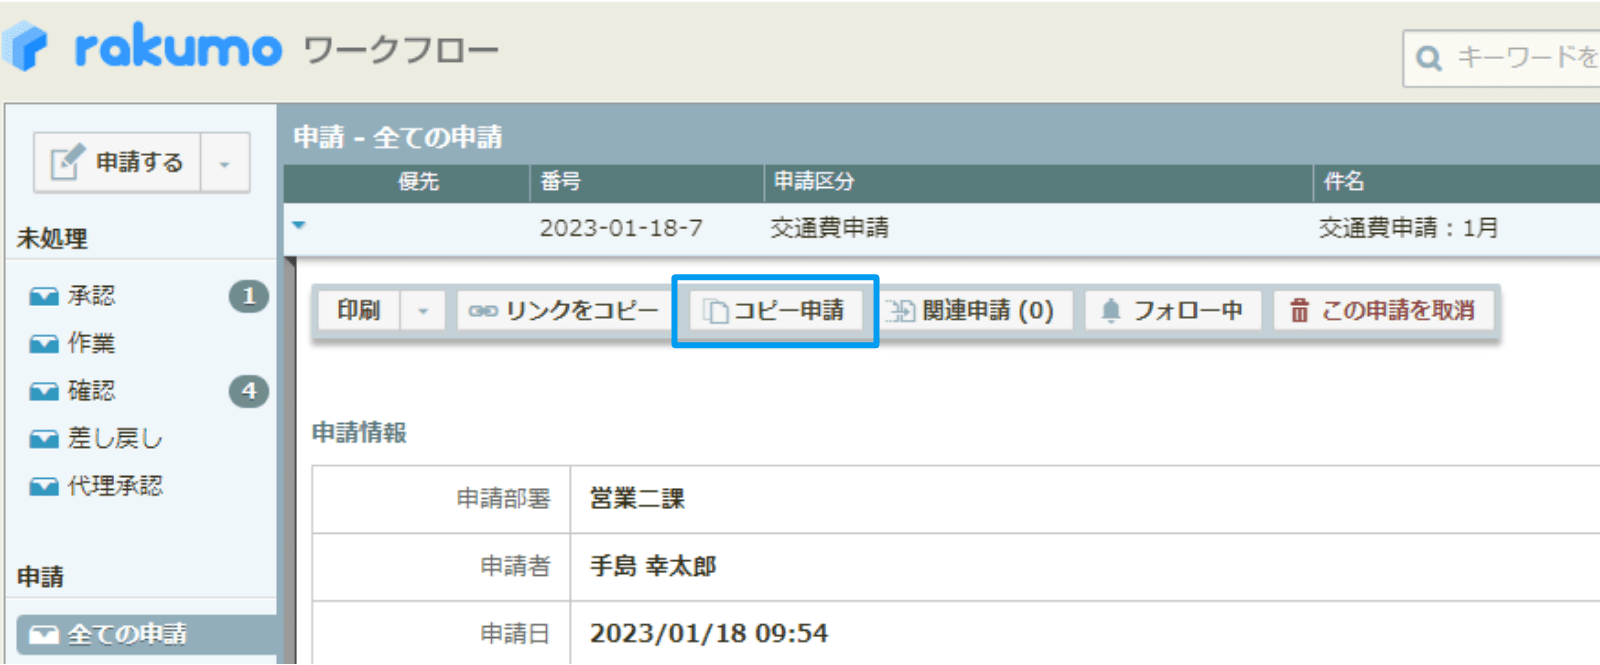 rakumo ワークフロー 提出済み申請書をコピー、新たな申請書作成している画面